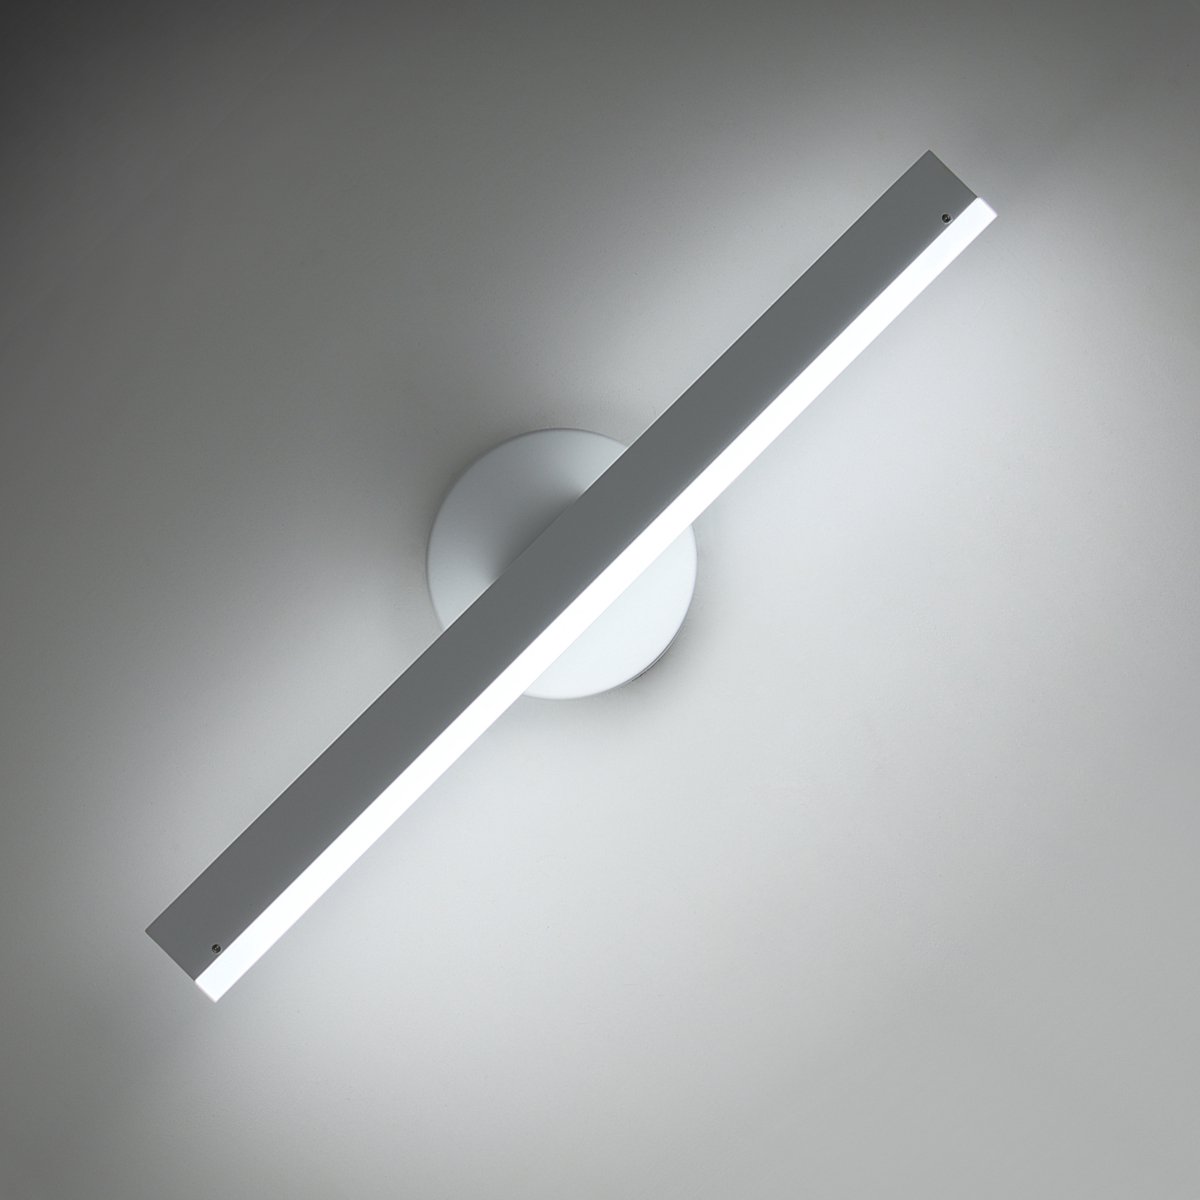 Delaveek-Moderne LED Binnen Wandlamp - 360° Draaibaar - 12W - Metaal - Koel Wit 6500K